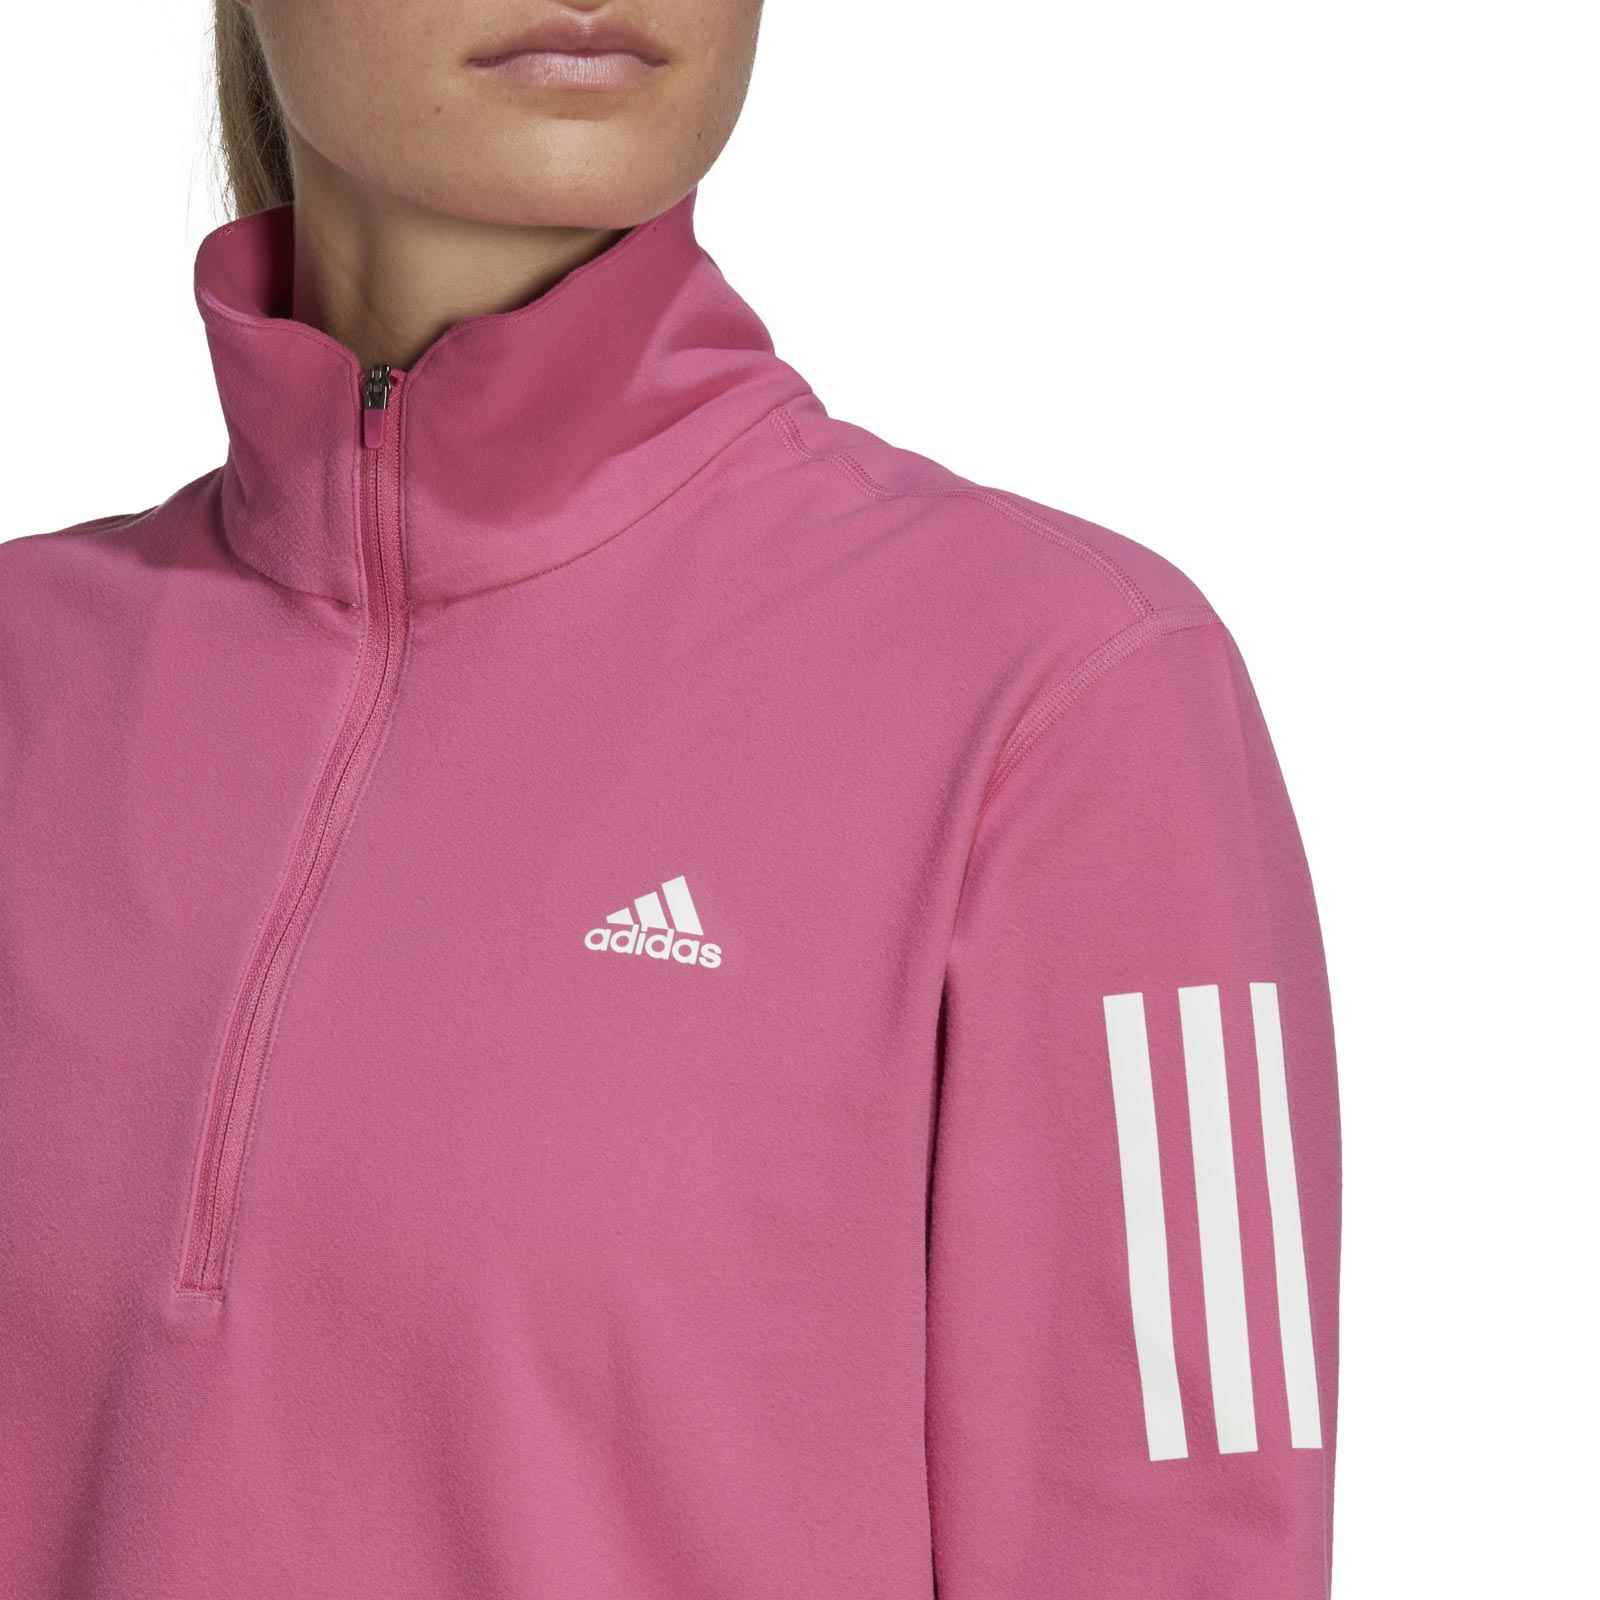 adidas Own the Run Womens Running Half-Zip Sweatshirt